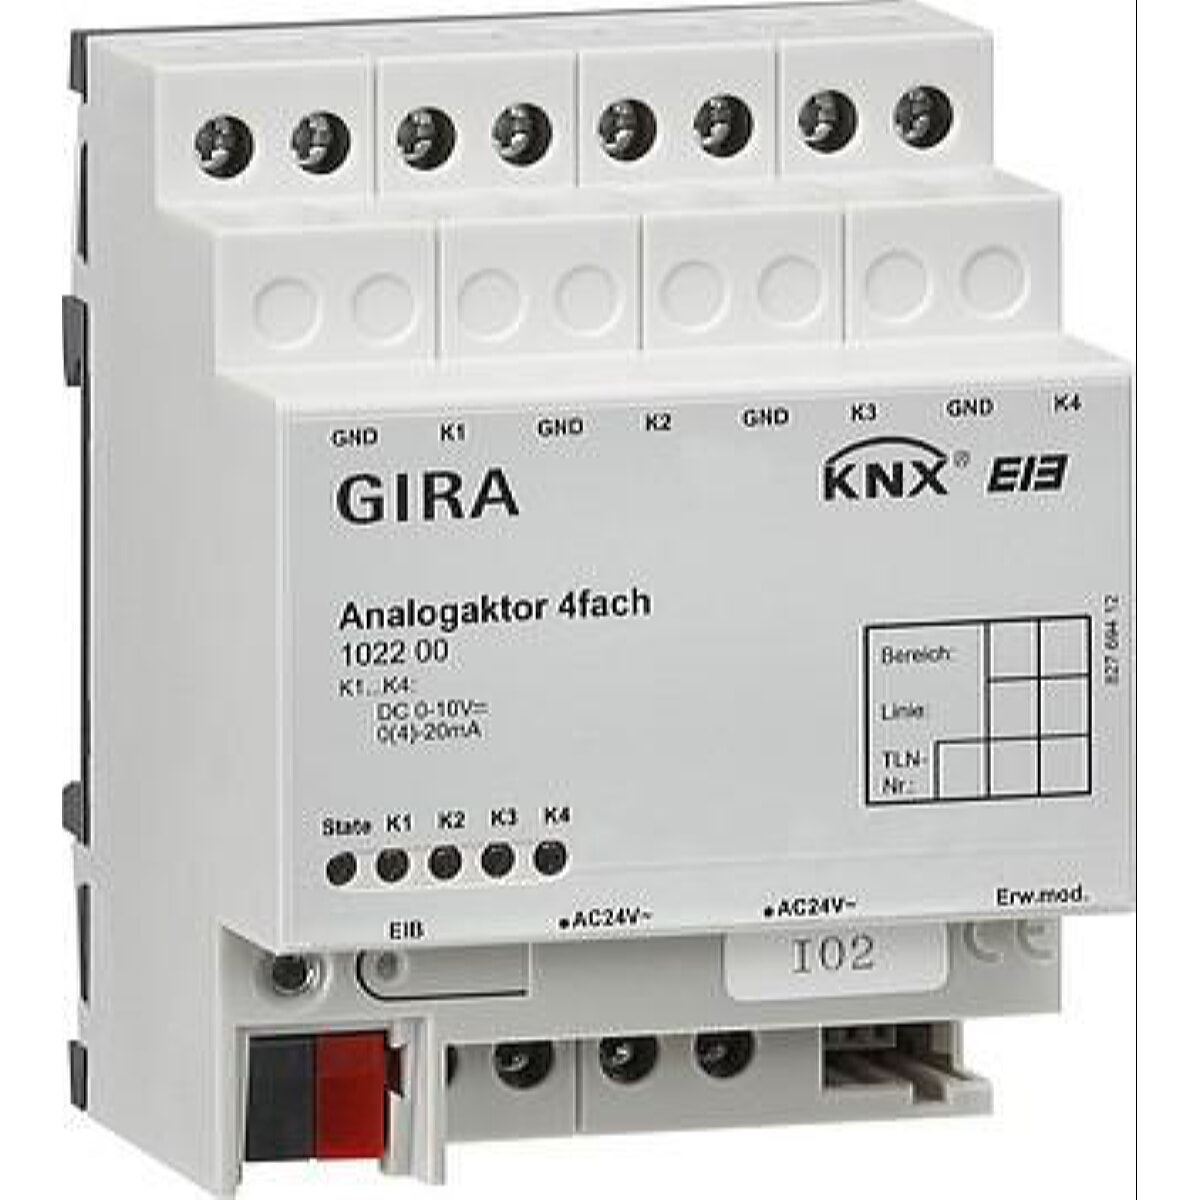 Gira Analogaktor 102200 KNX/EIB Analog 4fach REG